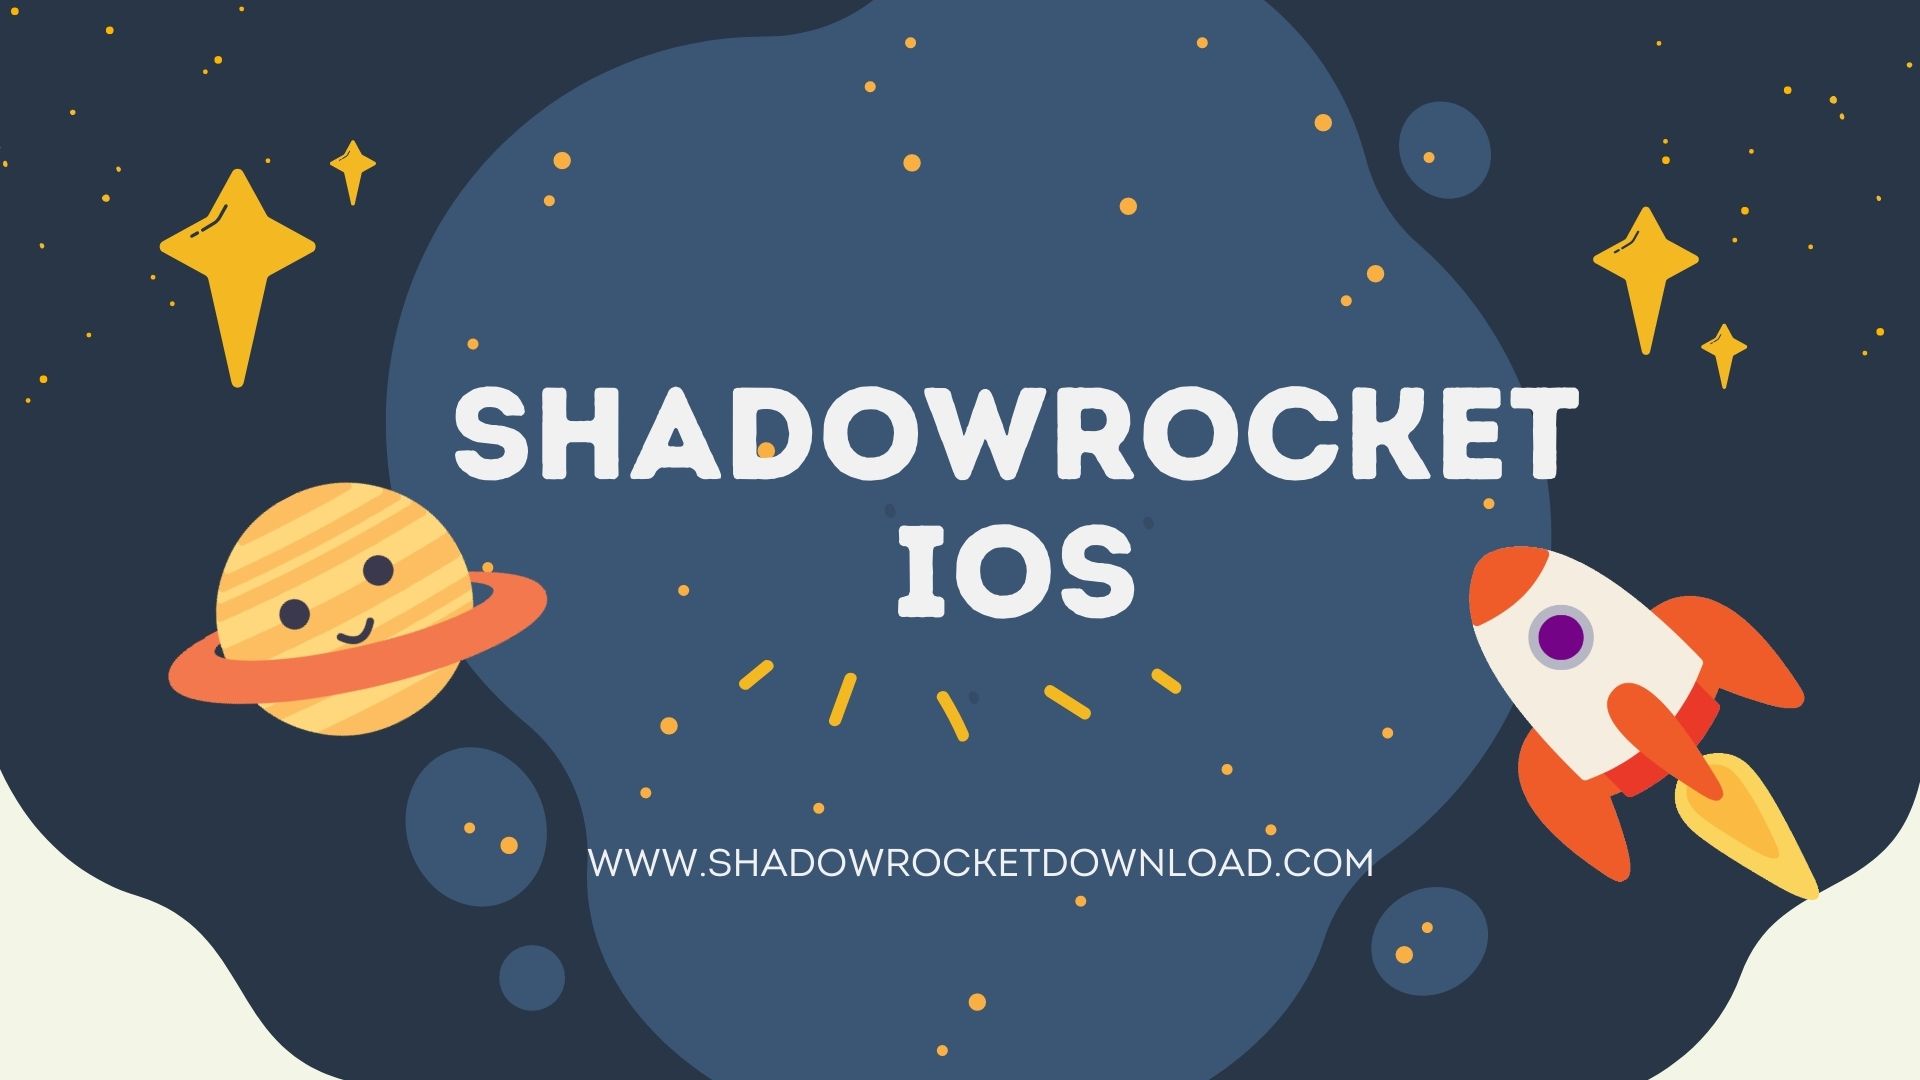 Shadowrocket iOS